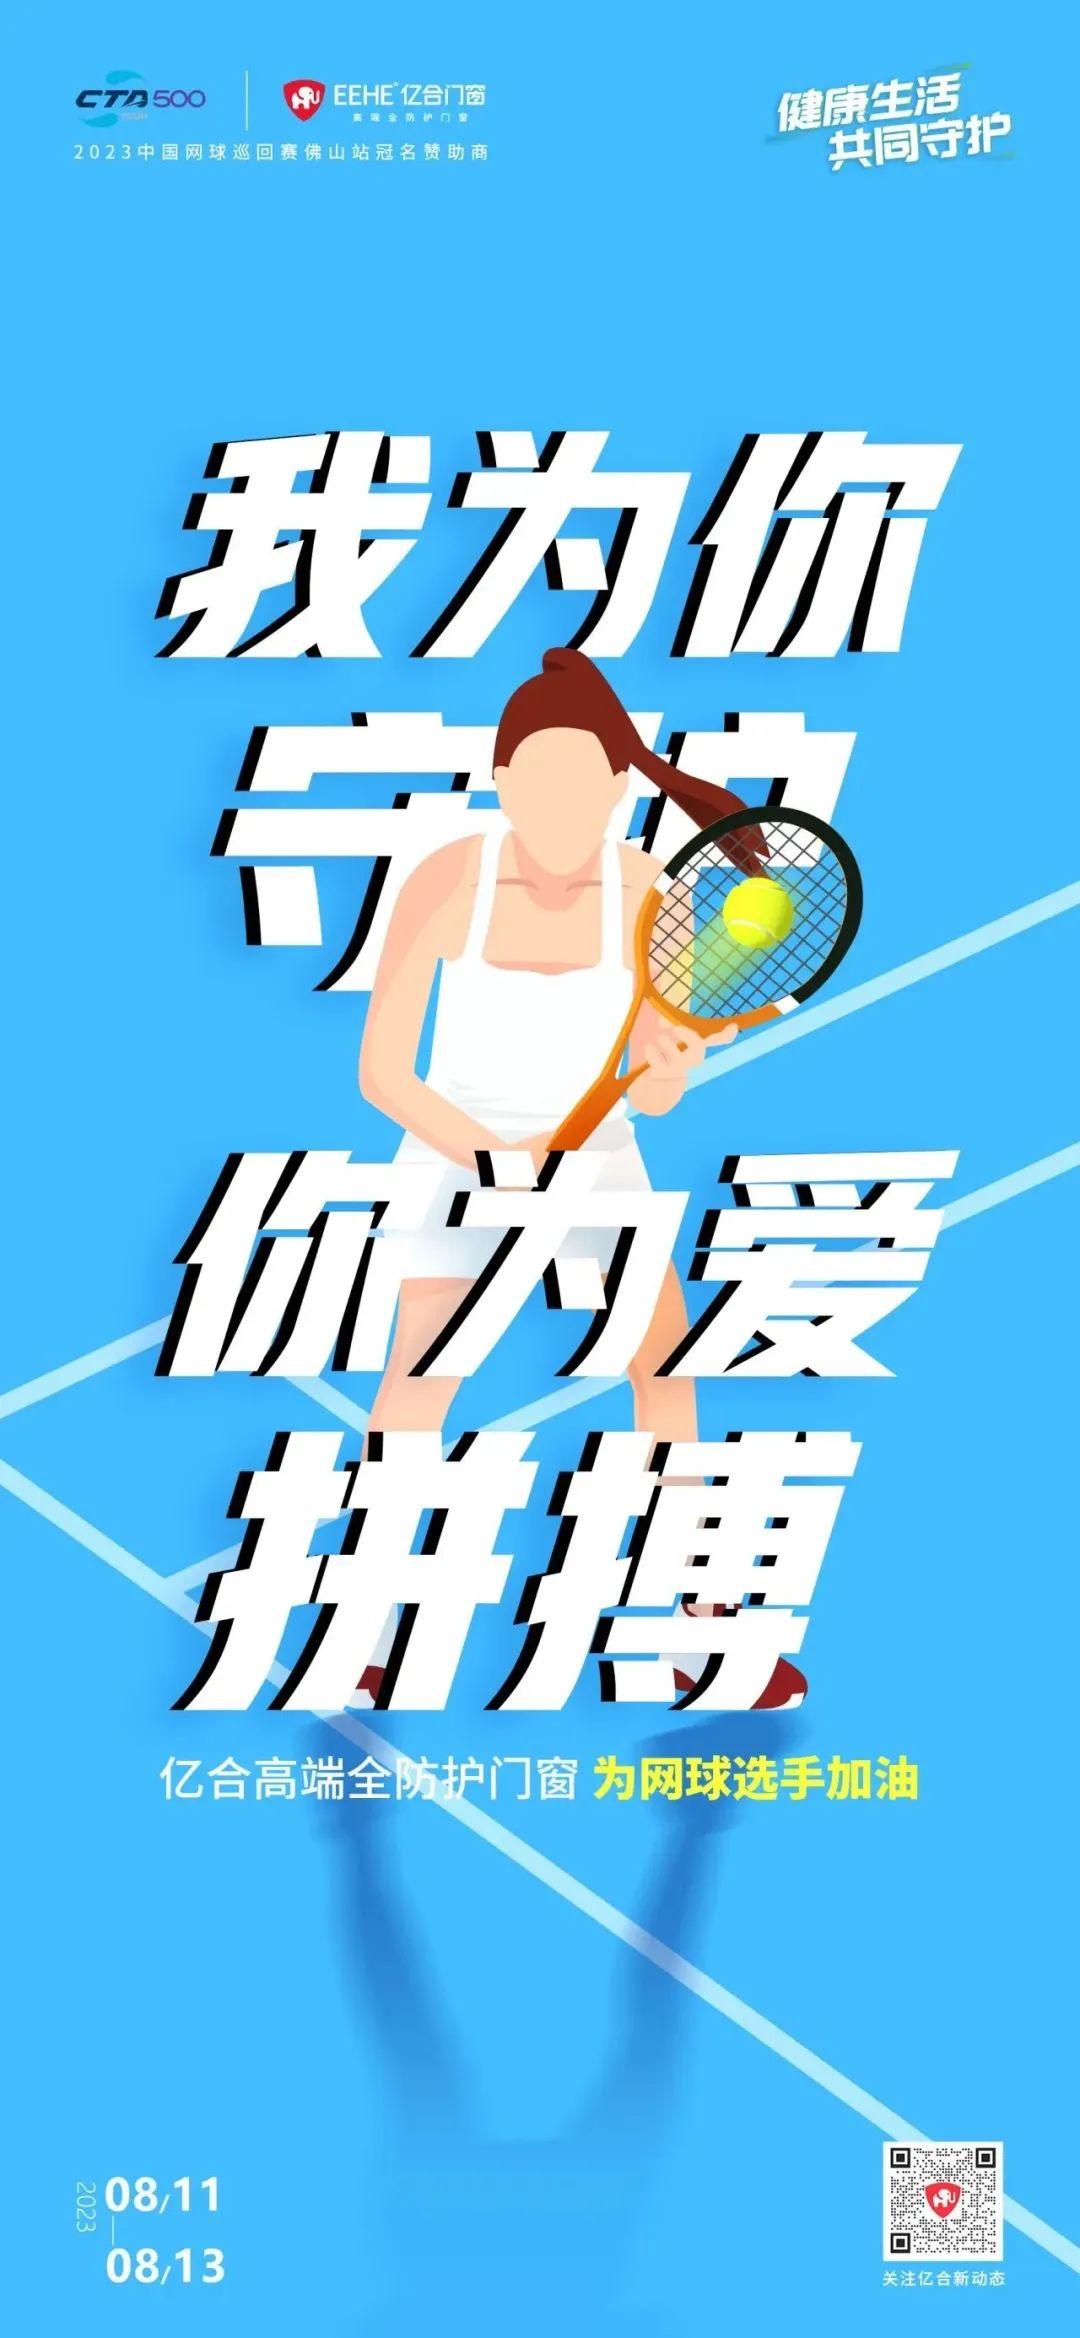 全民健身日 澳门新浦京665535com免费送网球赛门票 挥拍让生活燃起来！